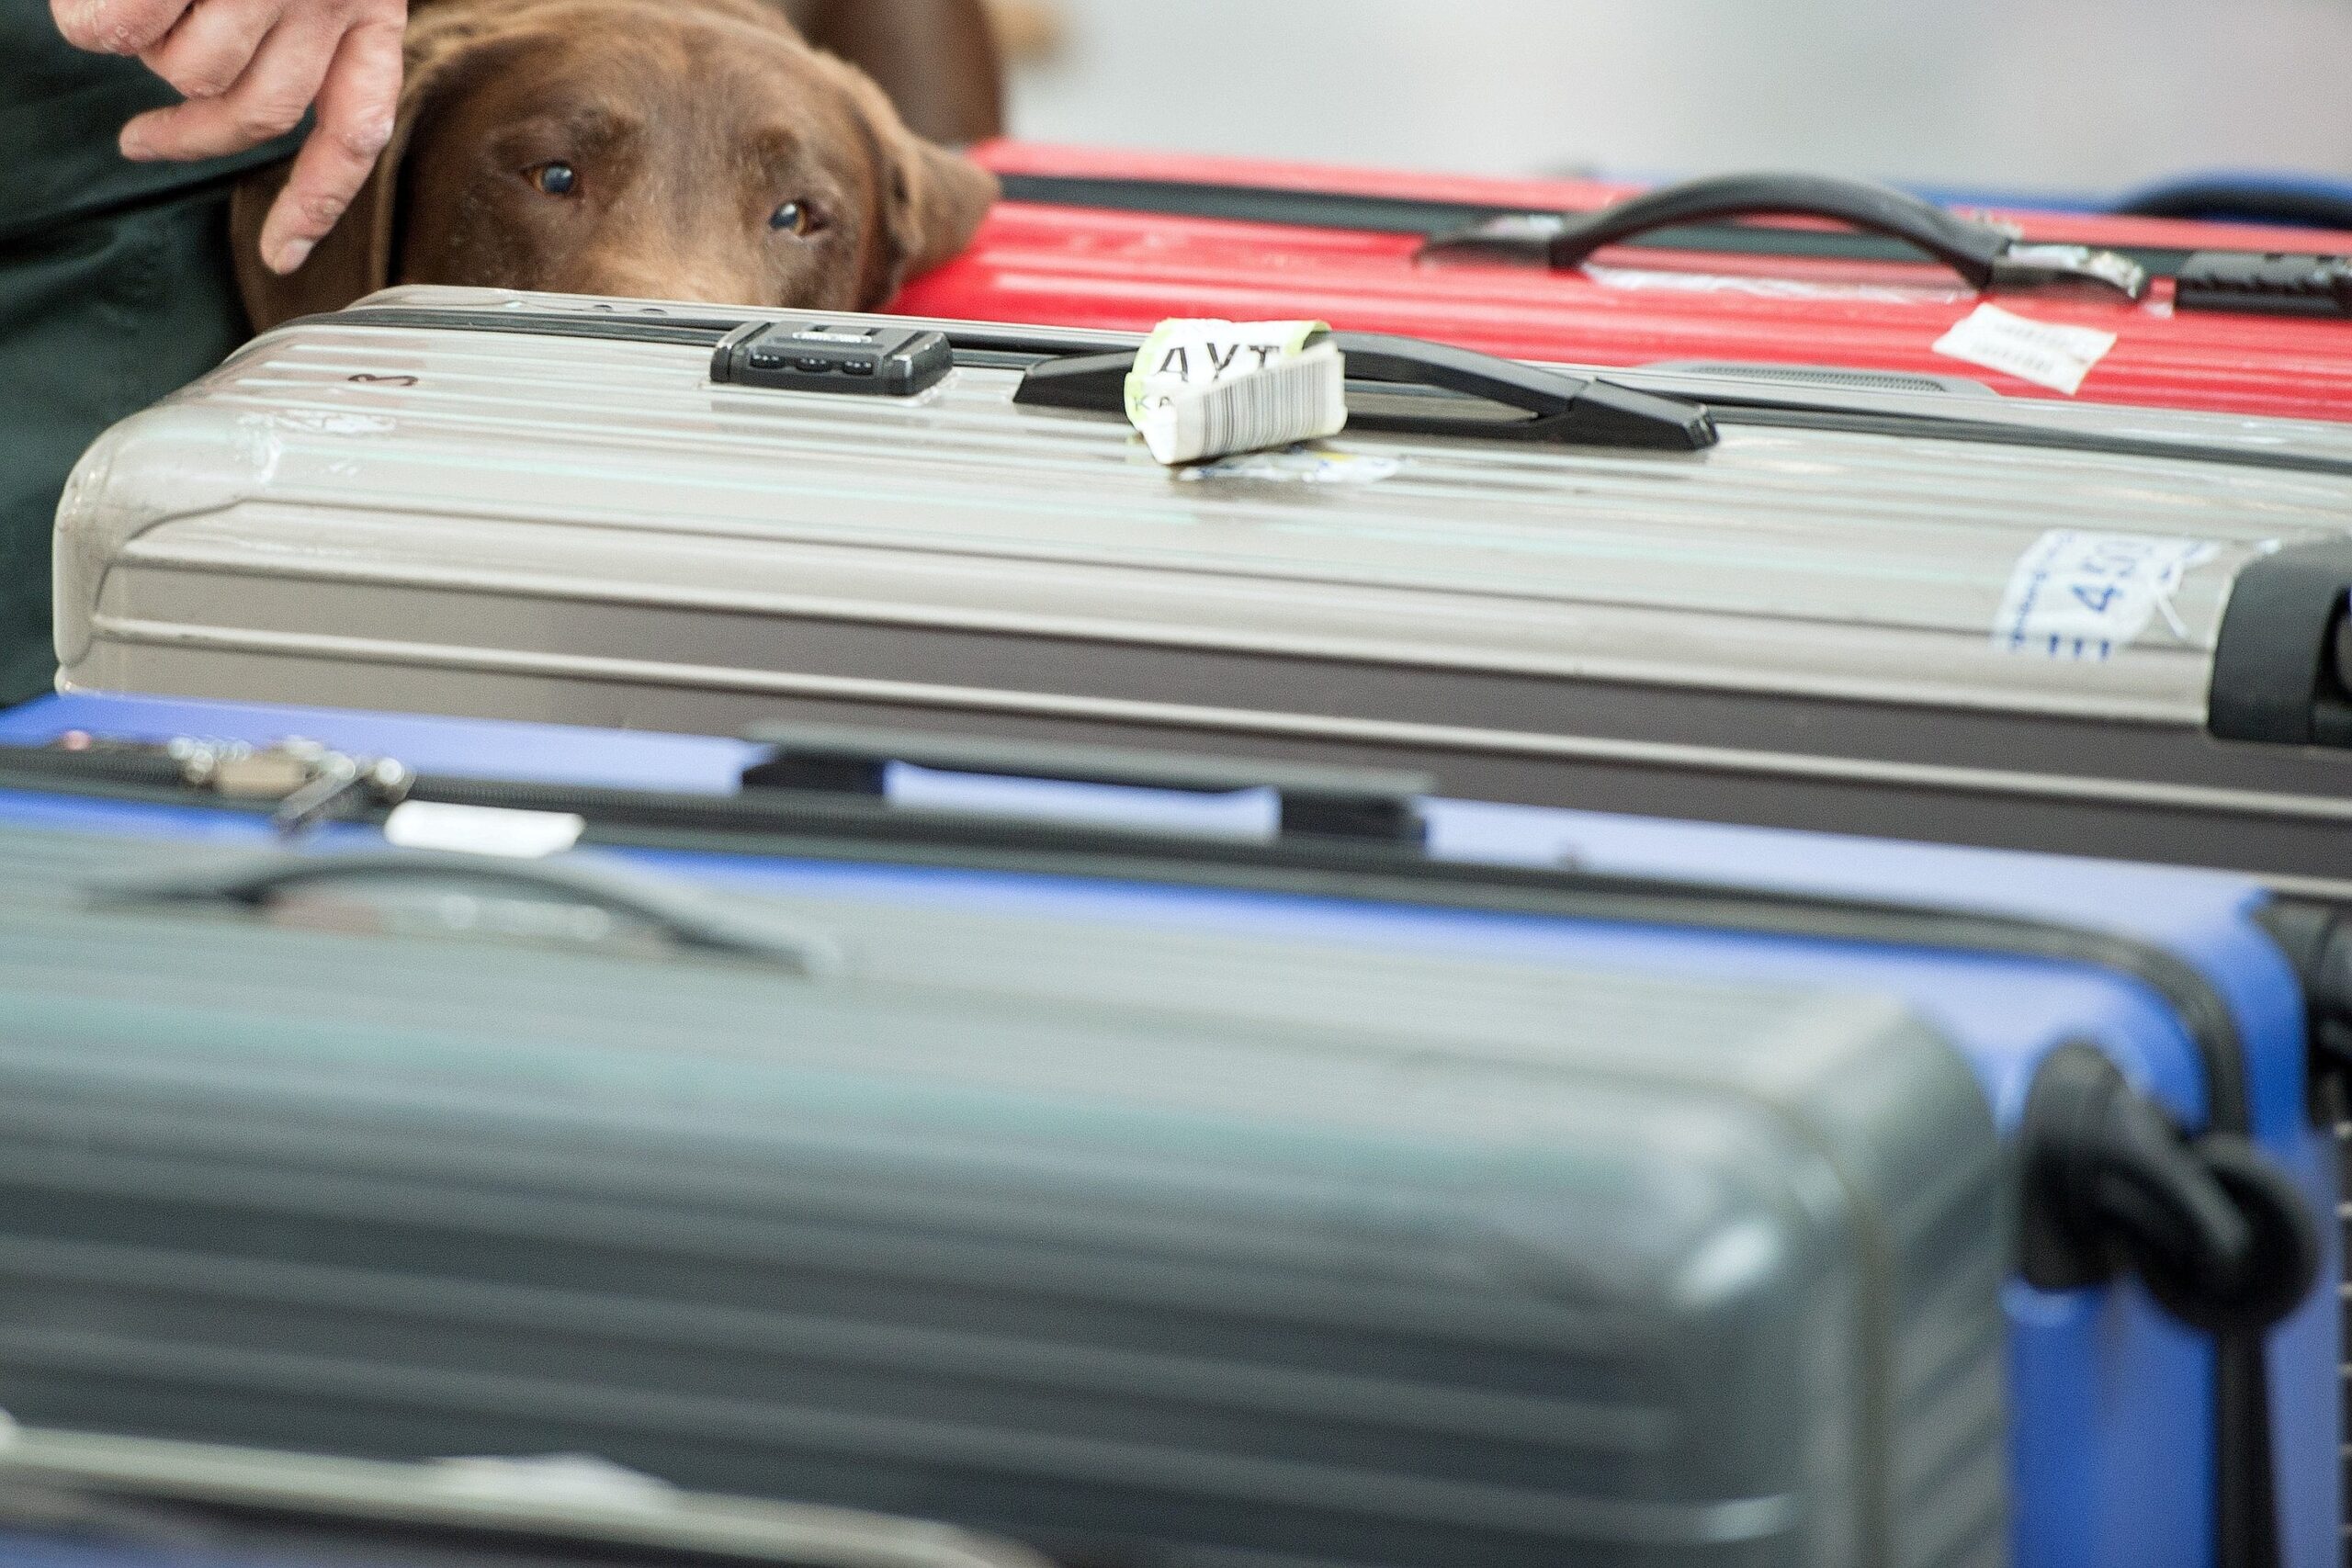 Die Hunde werden künftig zum Aufspüren geschützter Tiere und Pflanzen im Reisegepäck eingesetzt.